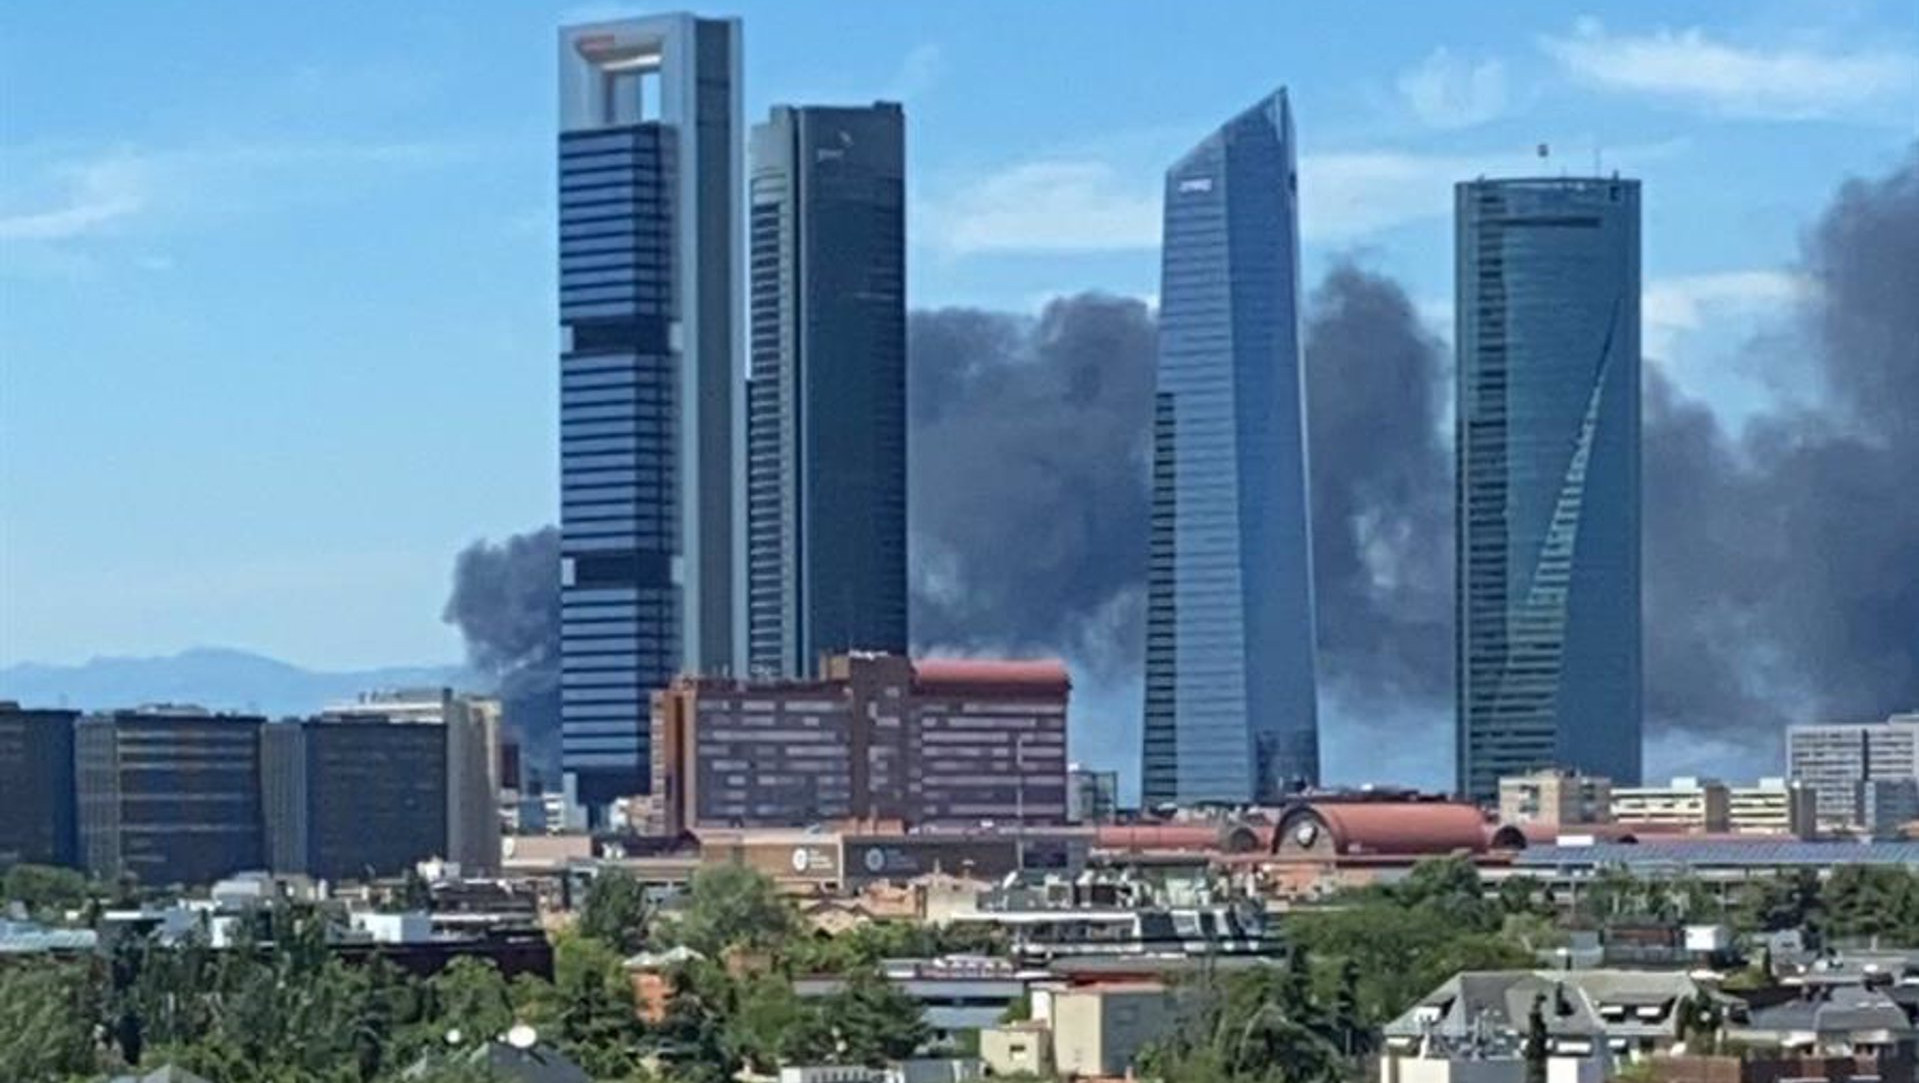 Un incendio en un edificio en Mirasierra (Madrid) provoca una gran columna de humo negro